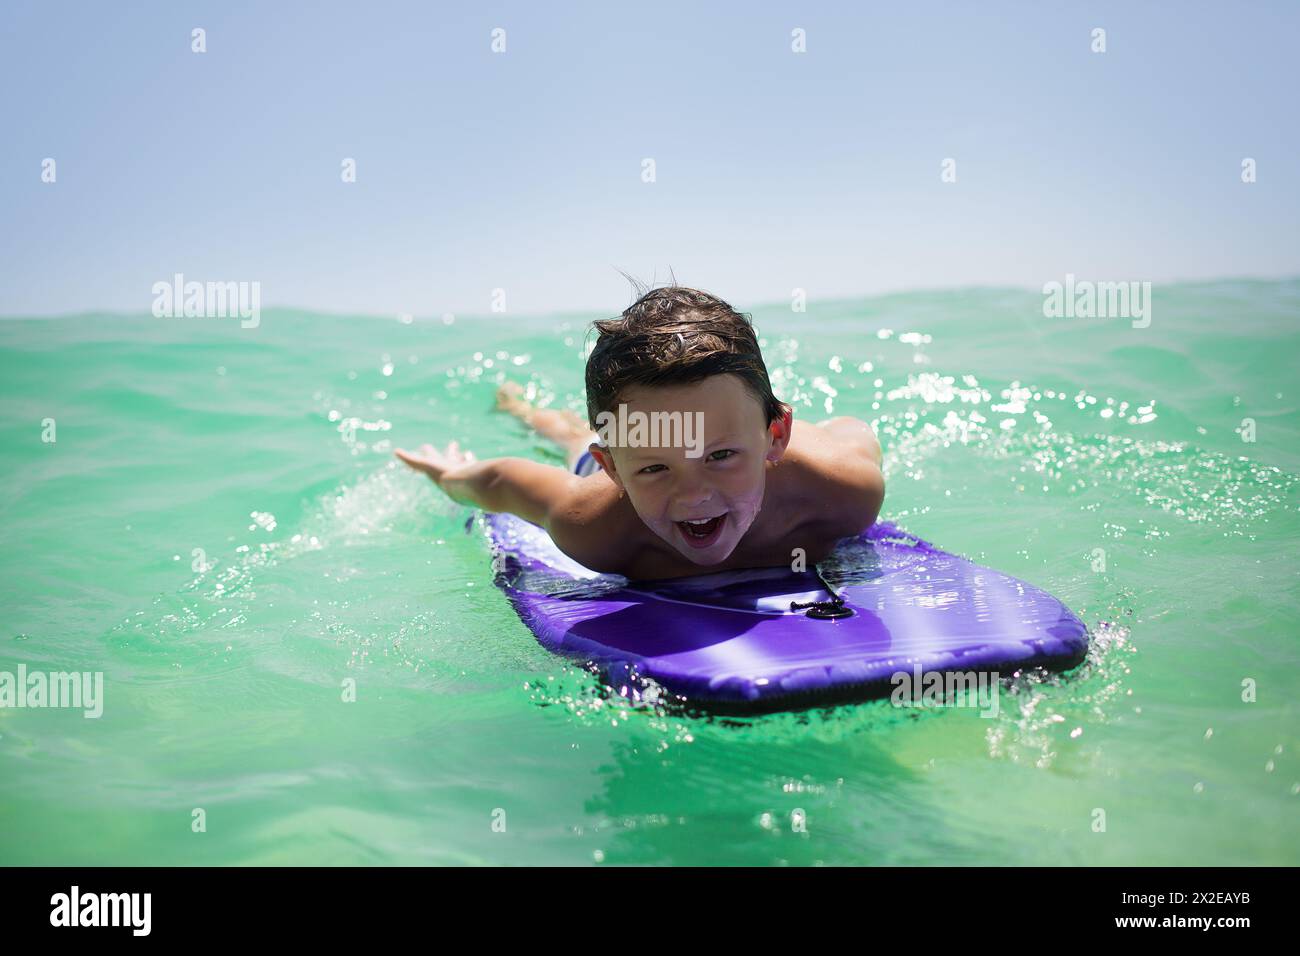 Boy Body Surfing joyeux sur une planche de boogie Banque D'Images